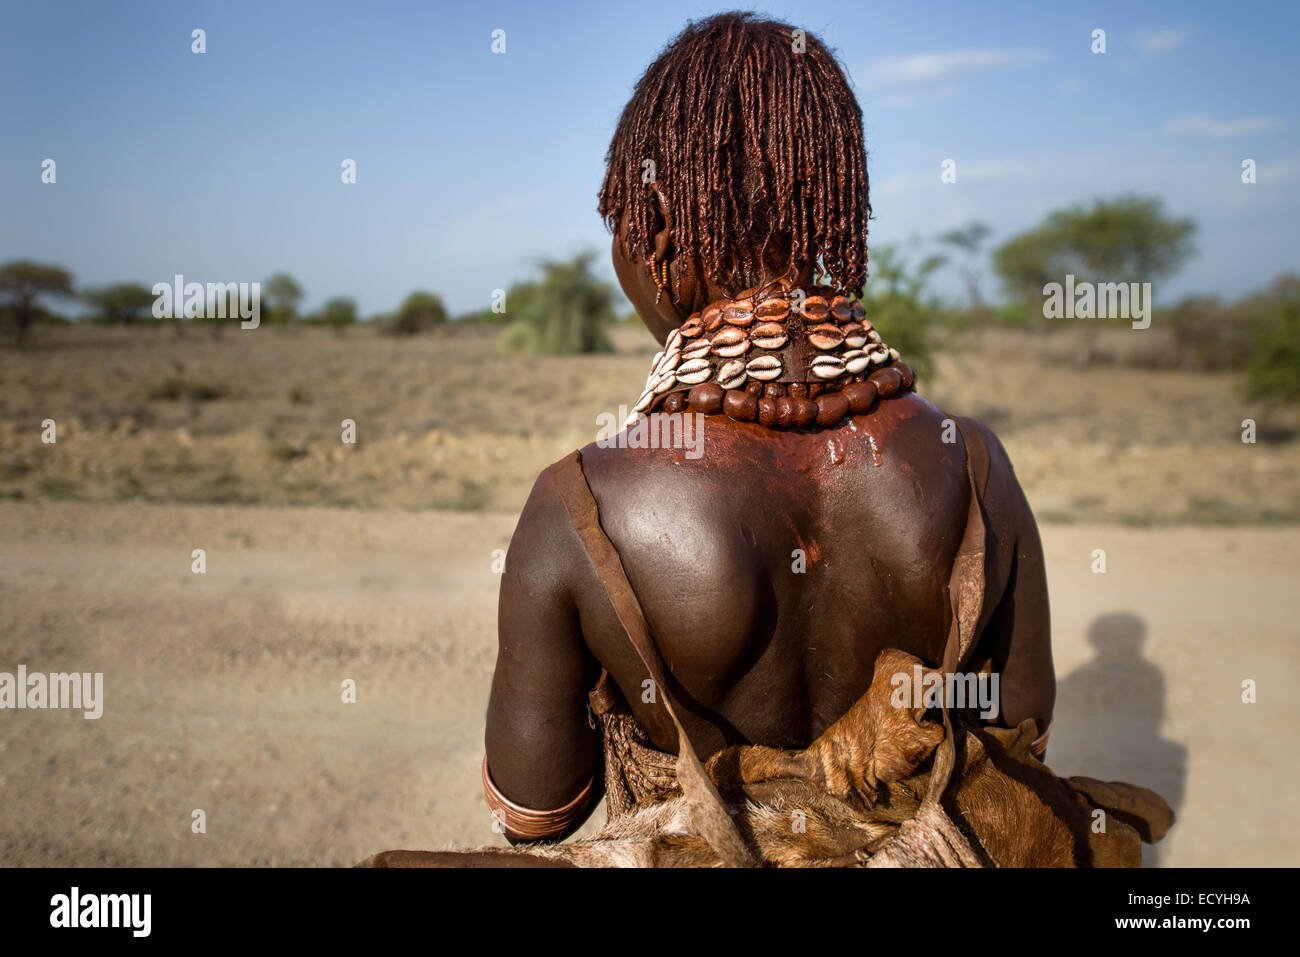 Hamar mujer con cabello ocre y decoraciones, Valle de Omo, Etiopía Foto de stock